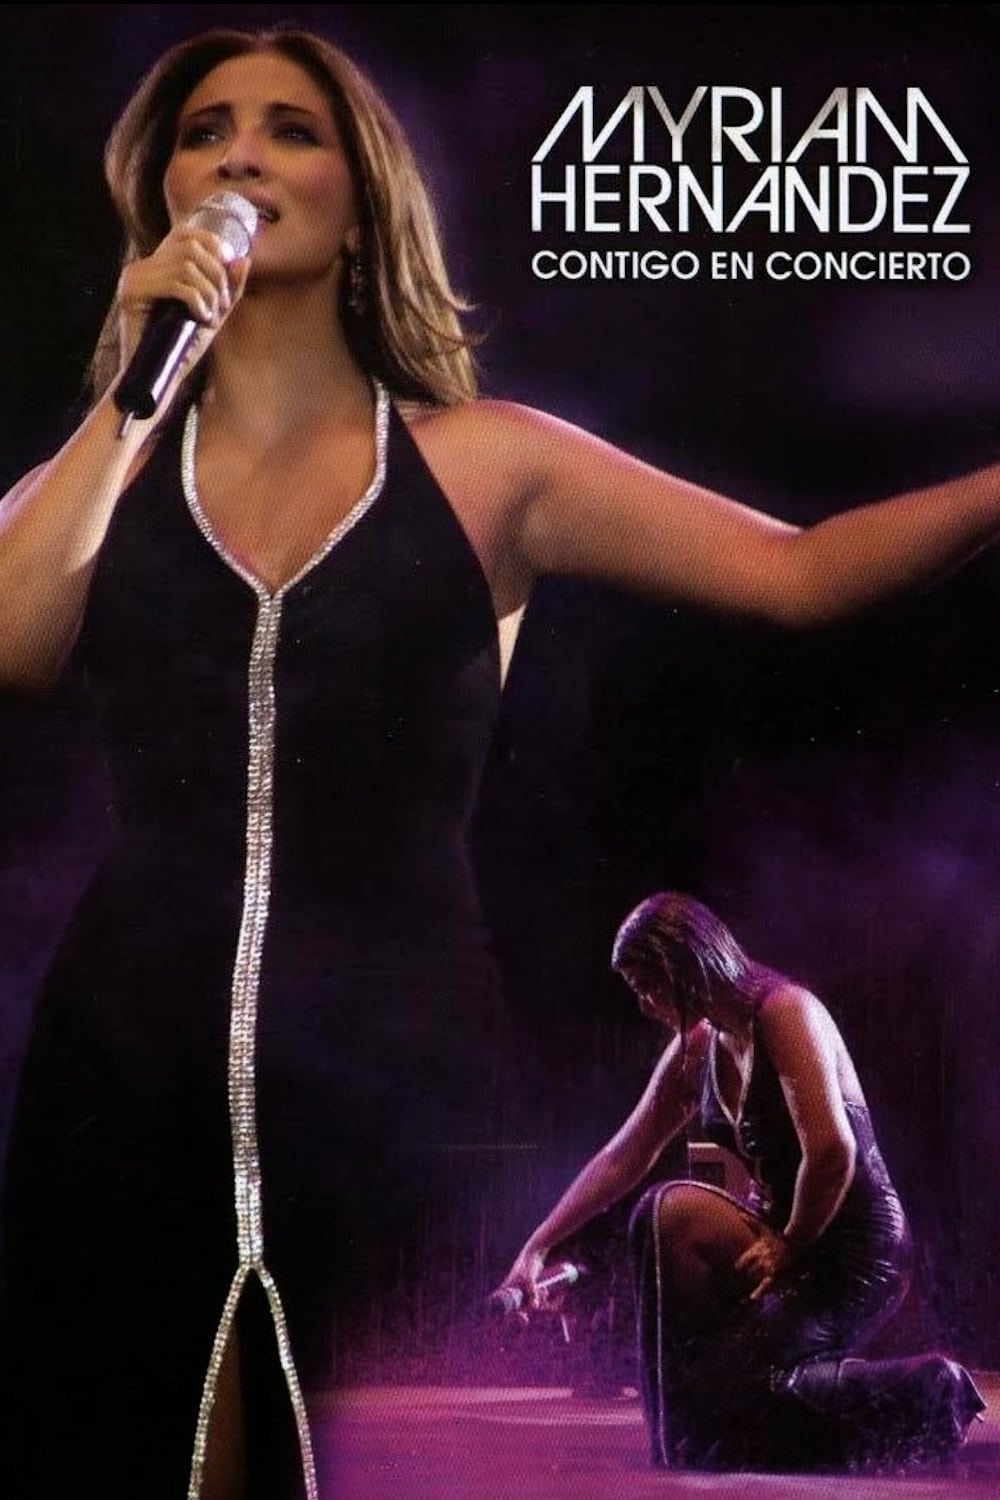 Myriam Hernández: Contigo en concierto